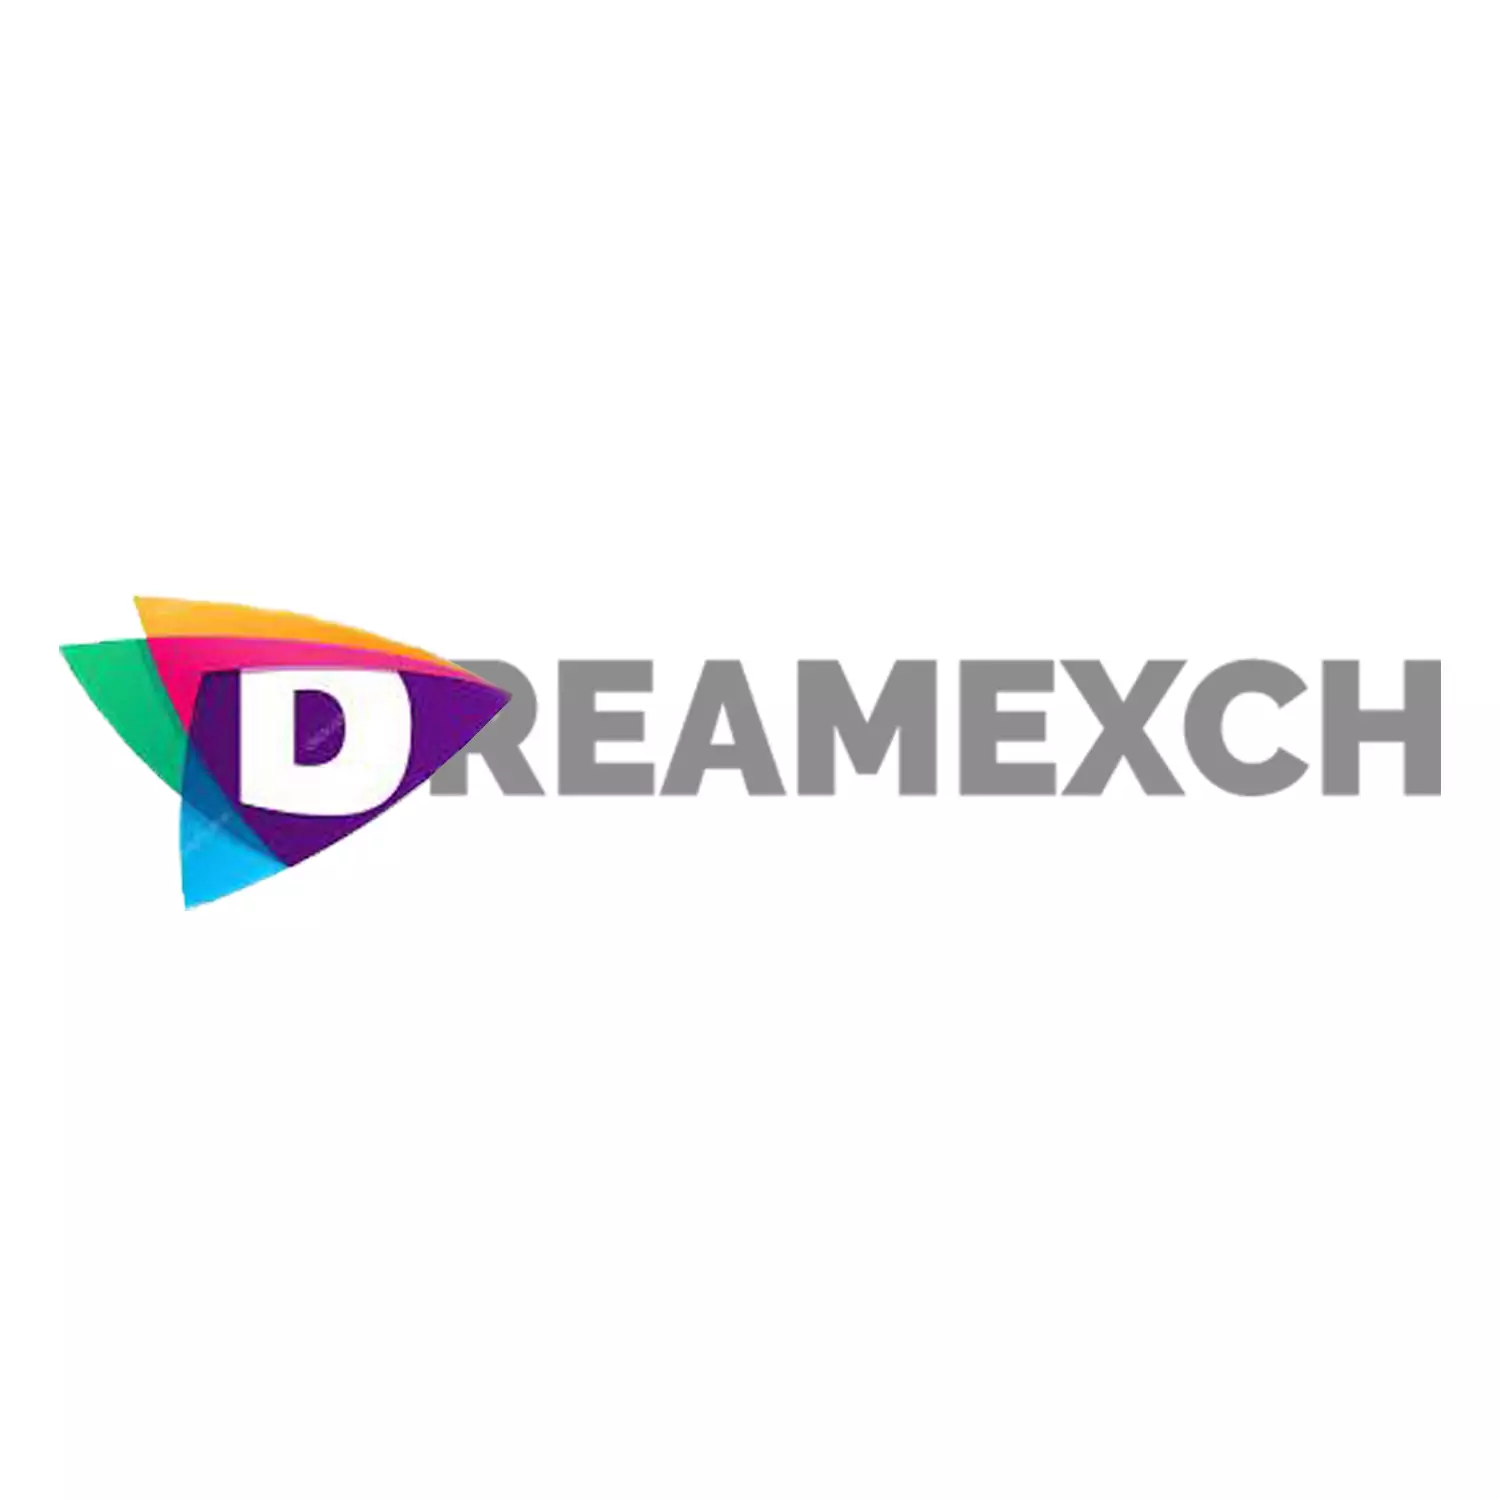 Dreamexch भारत में क्रिकेट सट्टेबाजी के लिए अनुशंसित नहीं है।